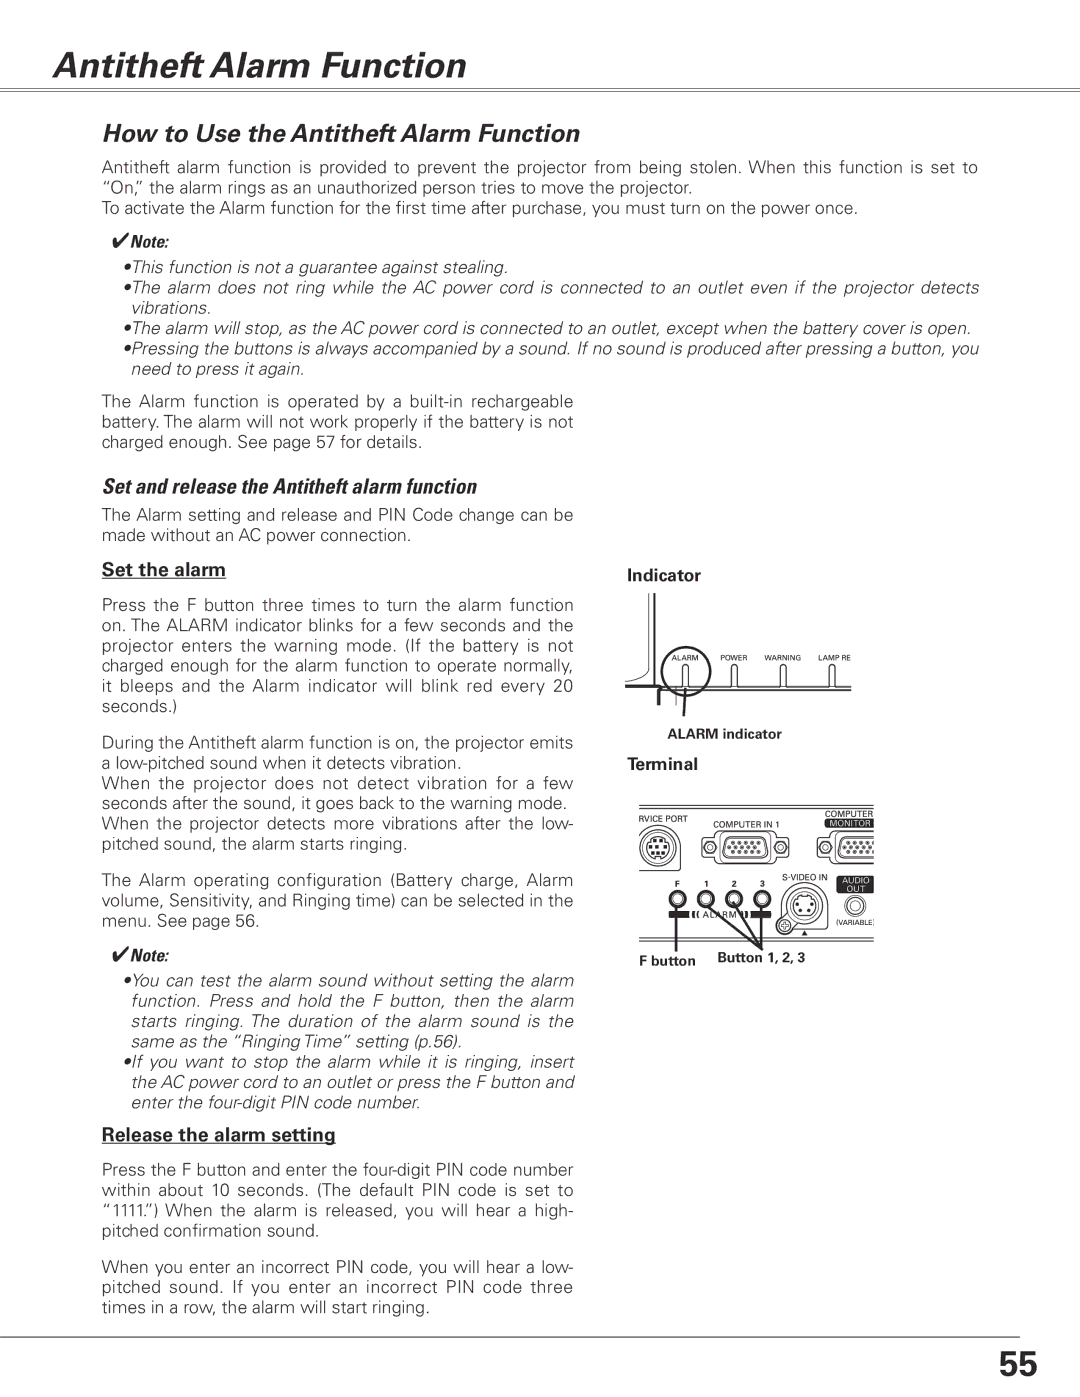 Sanyo PLC-XL50 How to Use the Antitheft Alarm Function, Set and release the Antitheft alarm function, Indicator 